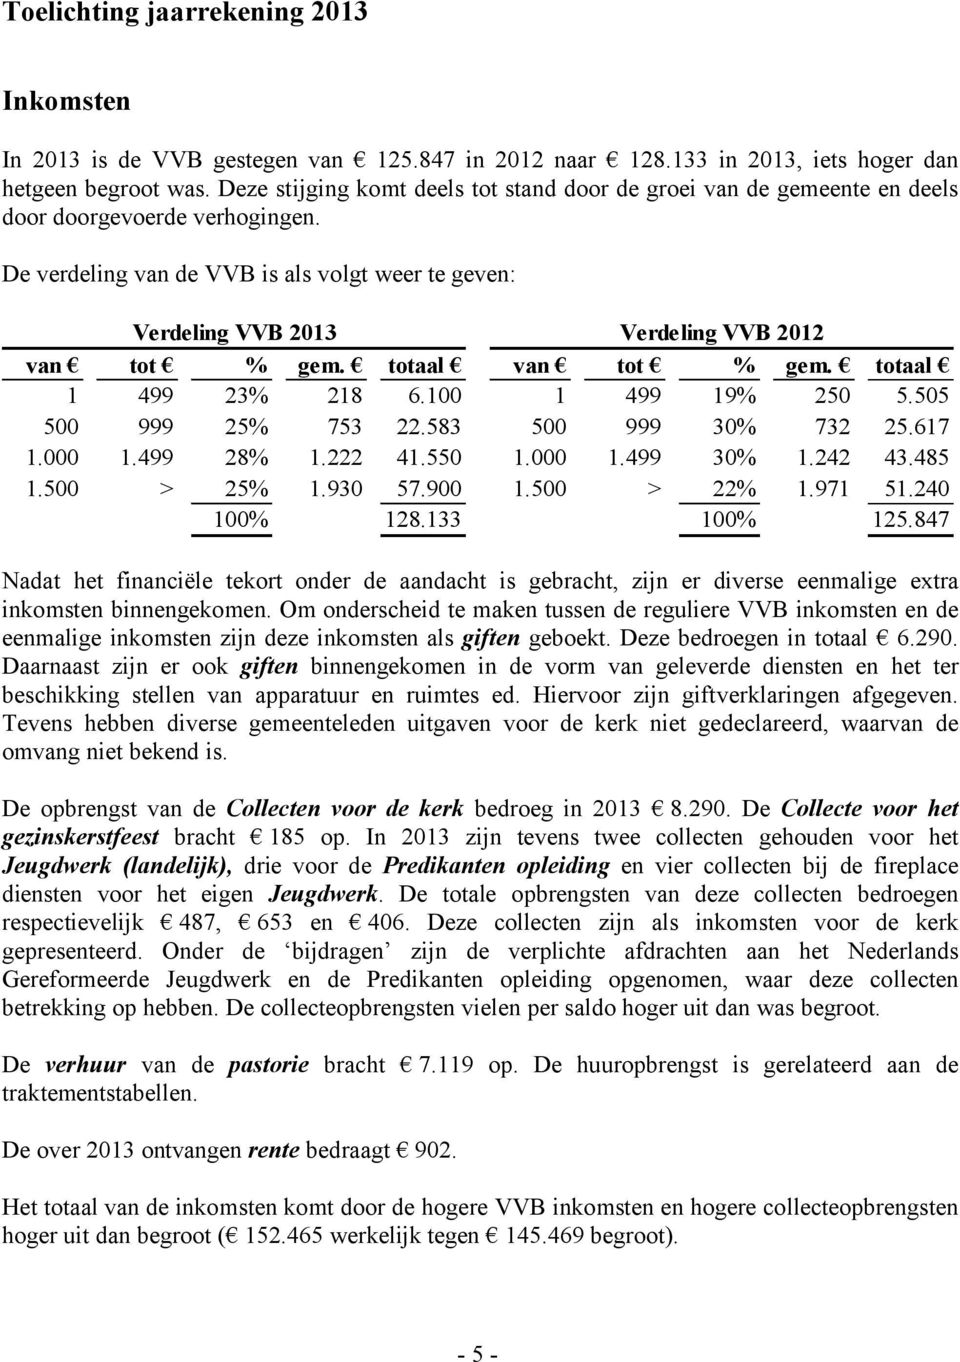 De verdeling van de VVB is als volgt weer te geven: Verdeling VVB 2013 Verdeling VVB 2012 van tot % gem. totaal van tot % gem. totaal 1 499 23% 218 6.100 1 499 19% 250 5.505 500 999 25% 753 22.